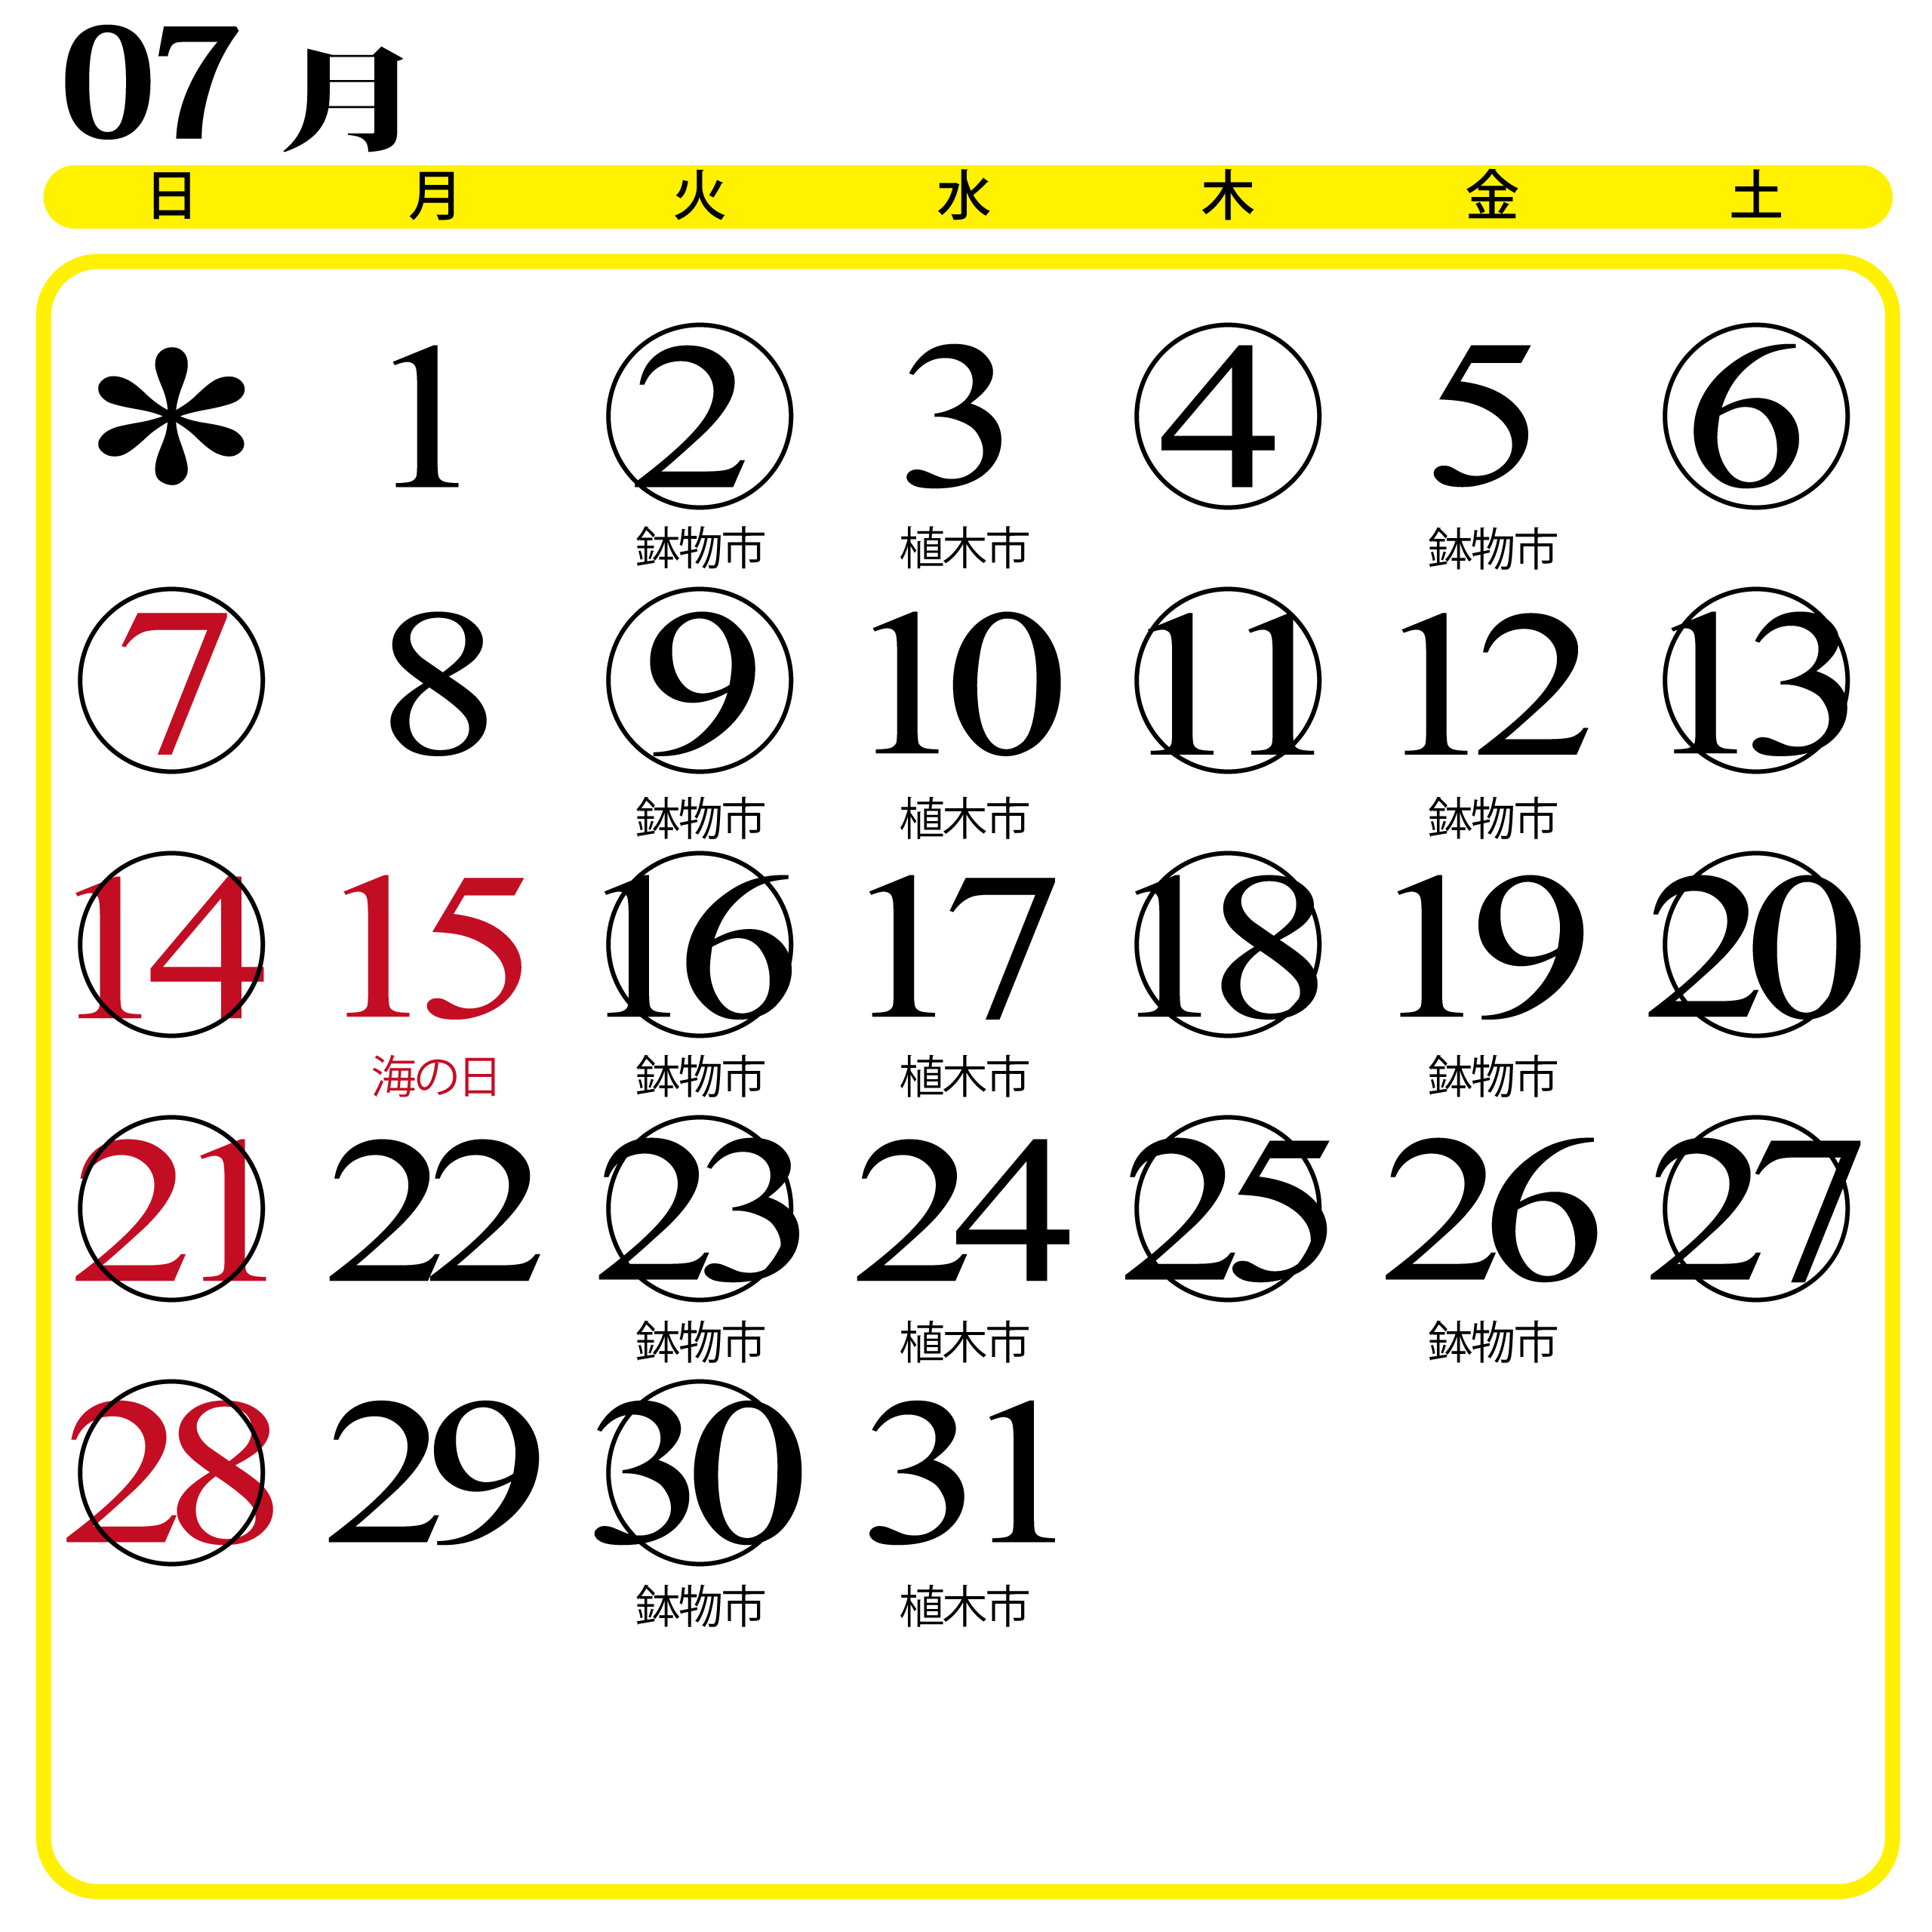 カレンダー画像202307